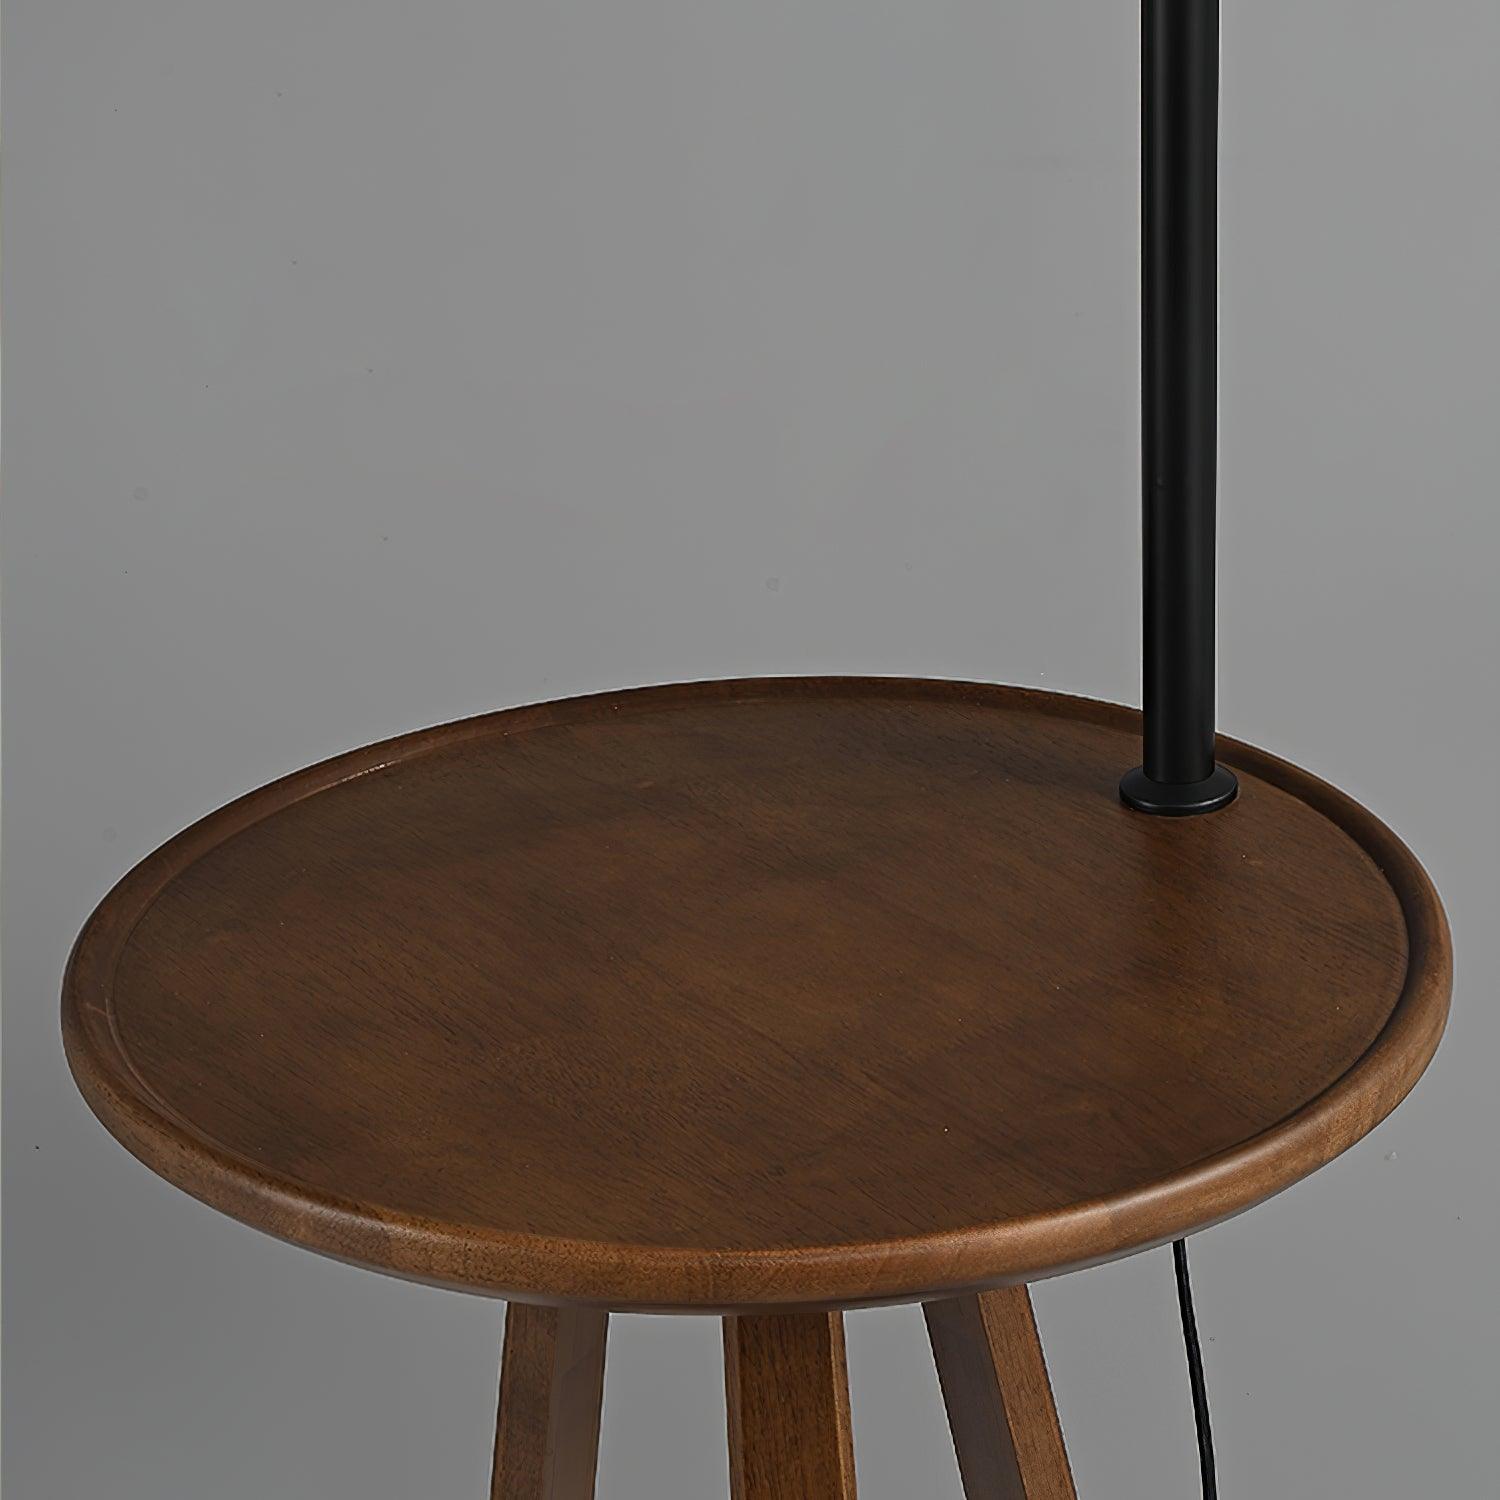 Hector Floor Lamp 16.5″- 66.9″